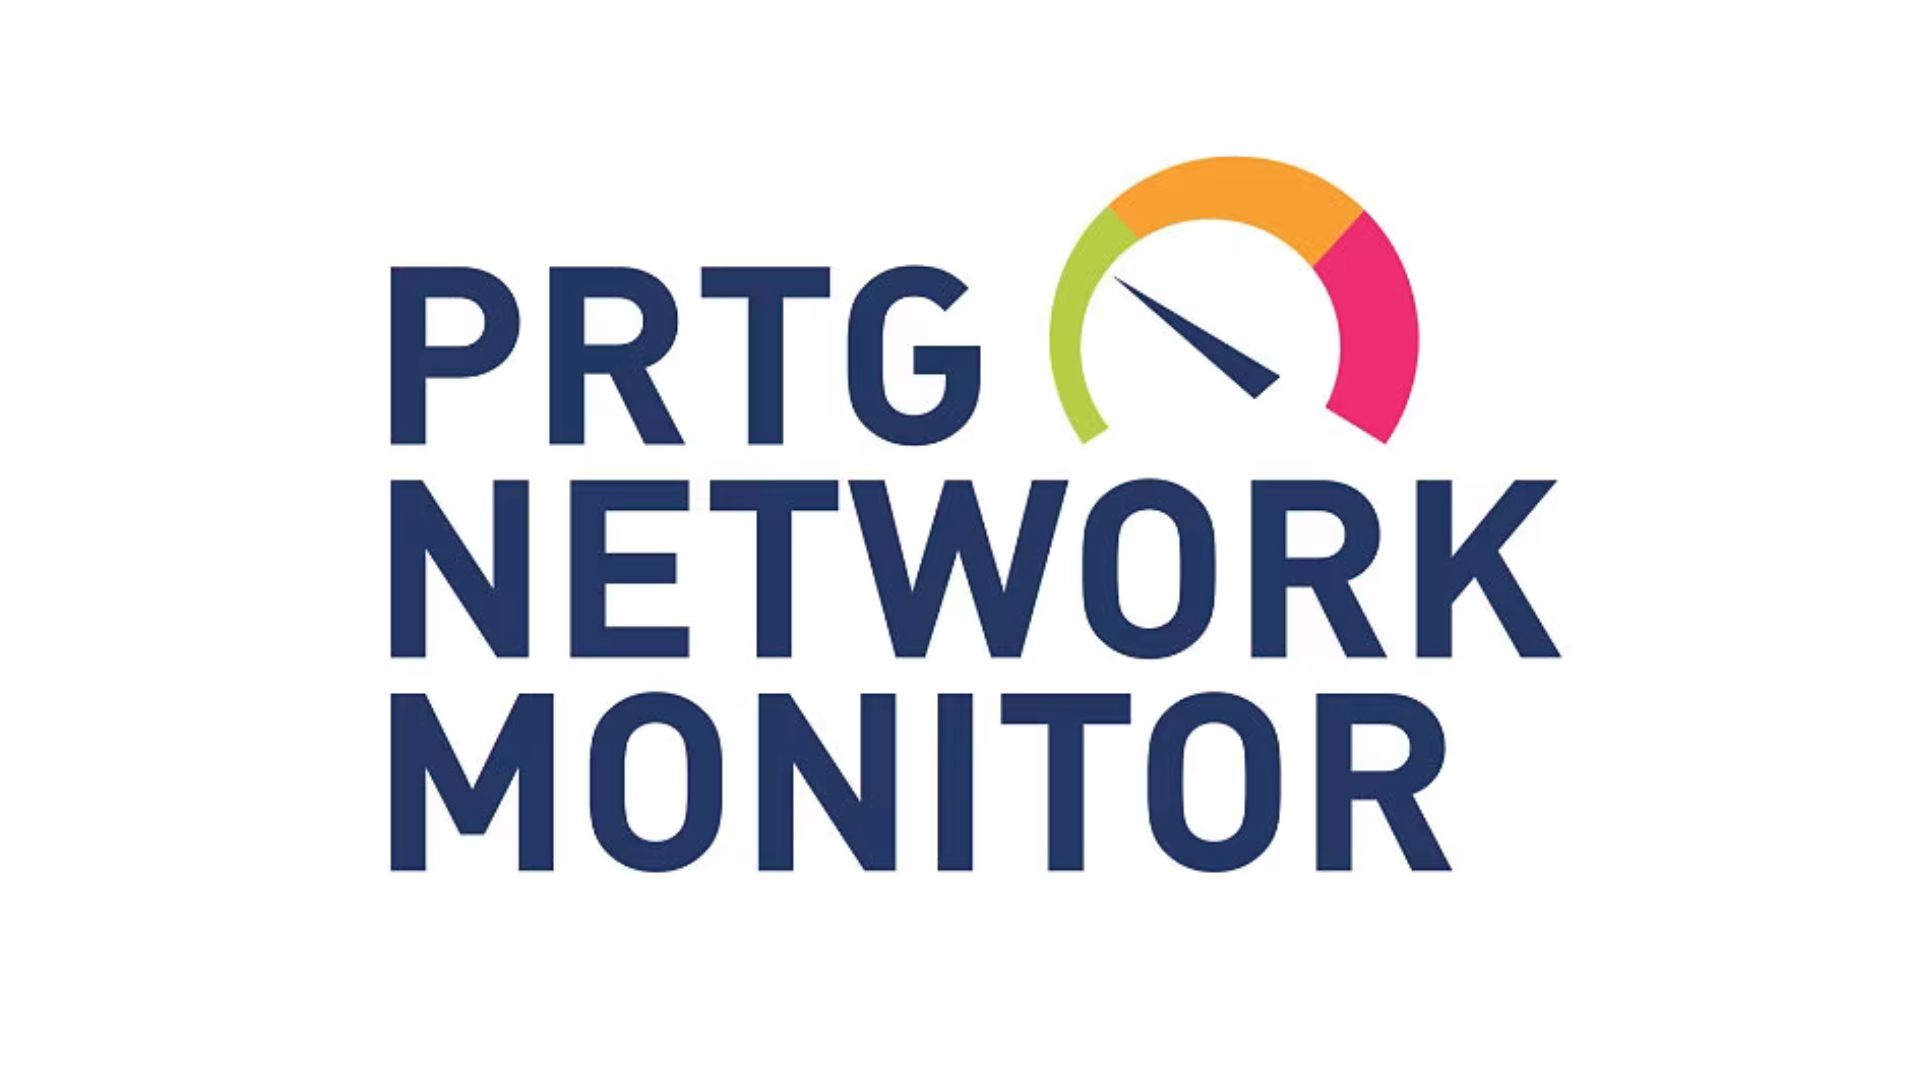 PRTG network monitoring logo